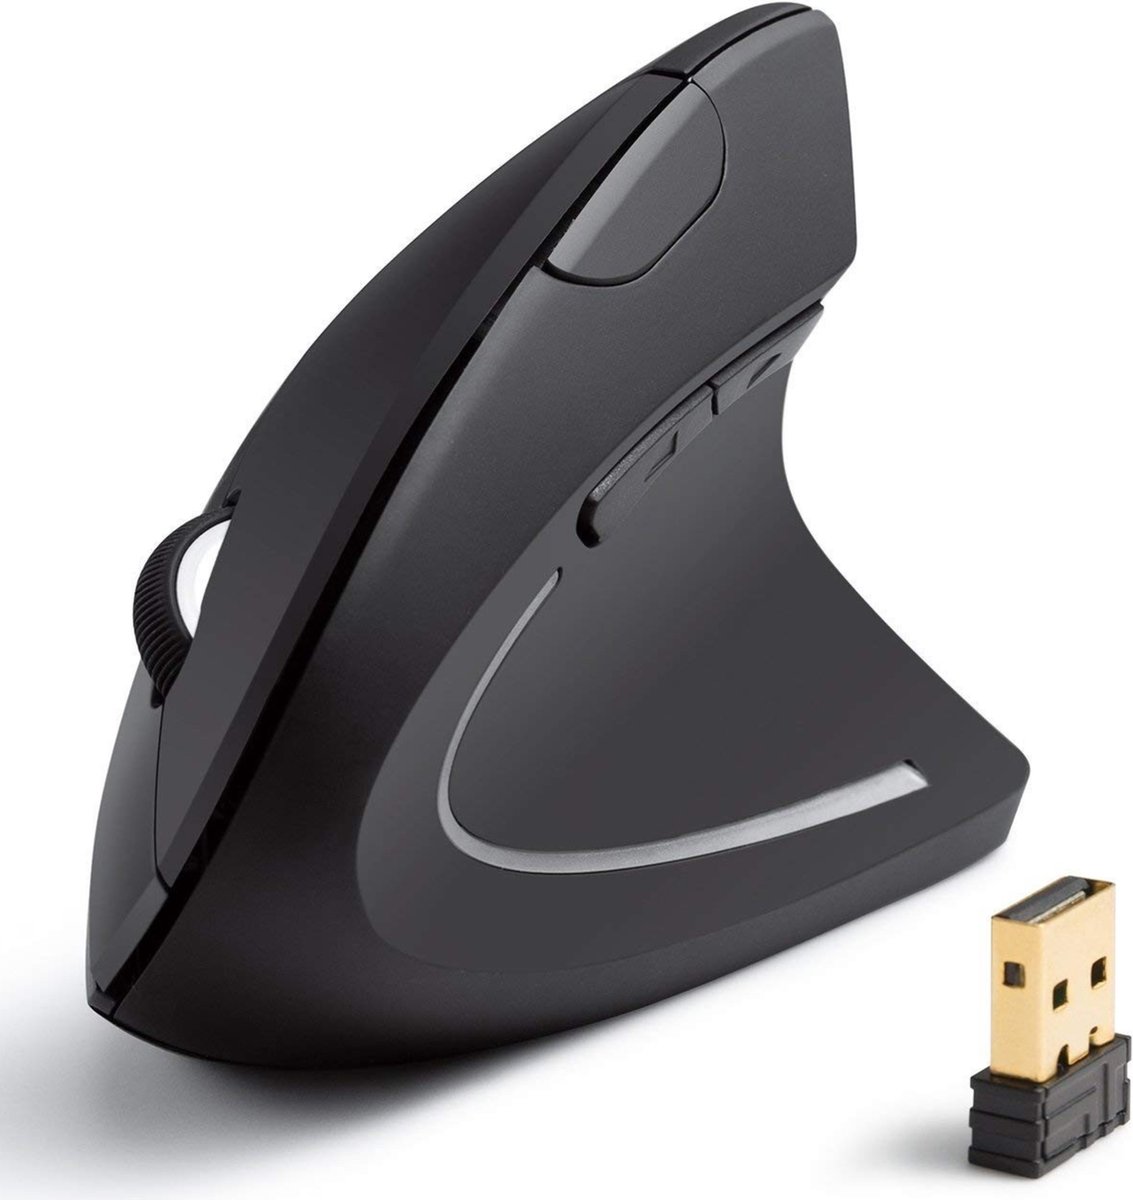 ErgoSupply SR150 Ergonomische Draadloze Muis - Extra Stille Computermuis - Draadloos met USB ontvanger - Voor Laptop of Computer - Wireless Mouse - Rechtshandig en Ergonomisch - Zwart